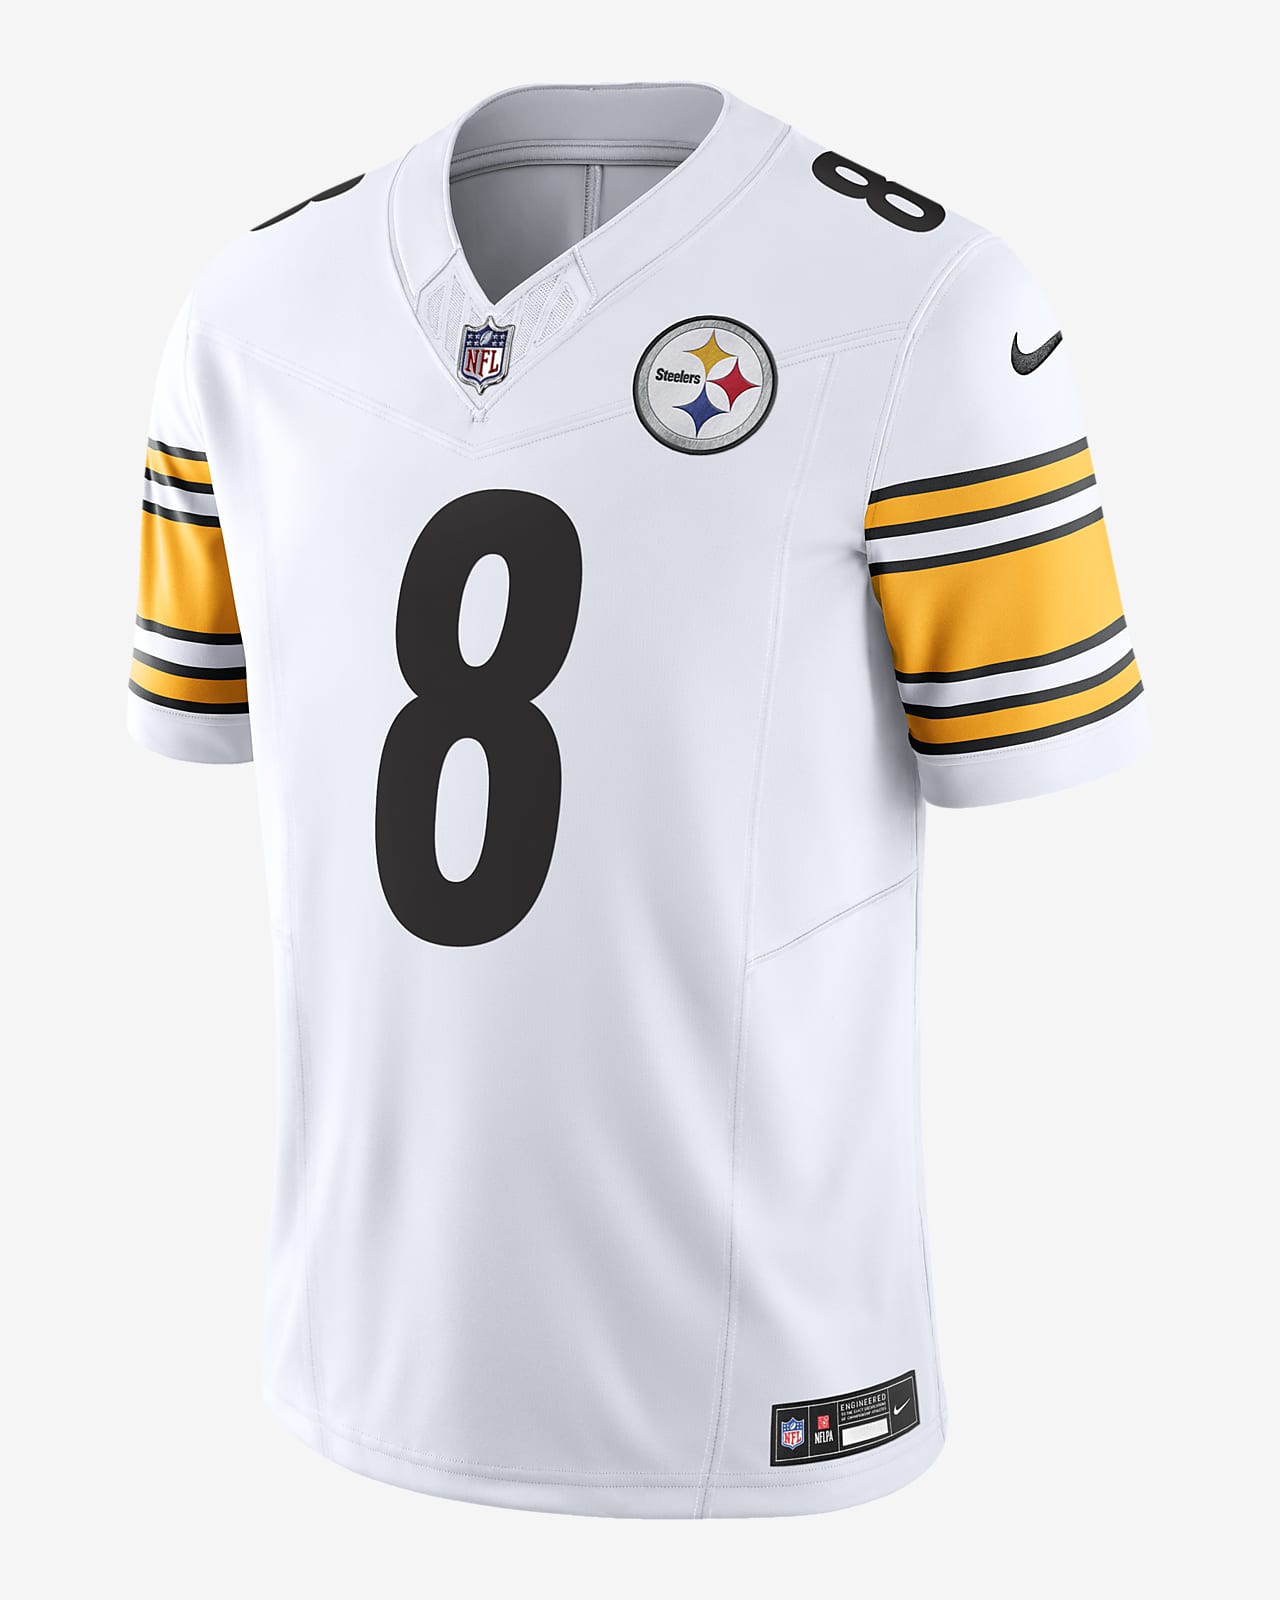 Jersey de fútbol americano Nike Dri-FIT de la NFL Limited para hombre Kenny Pickett Pittsburgh Steelers